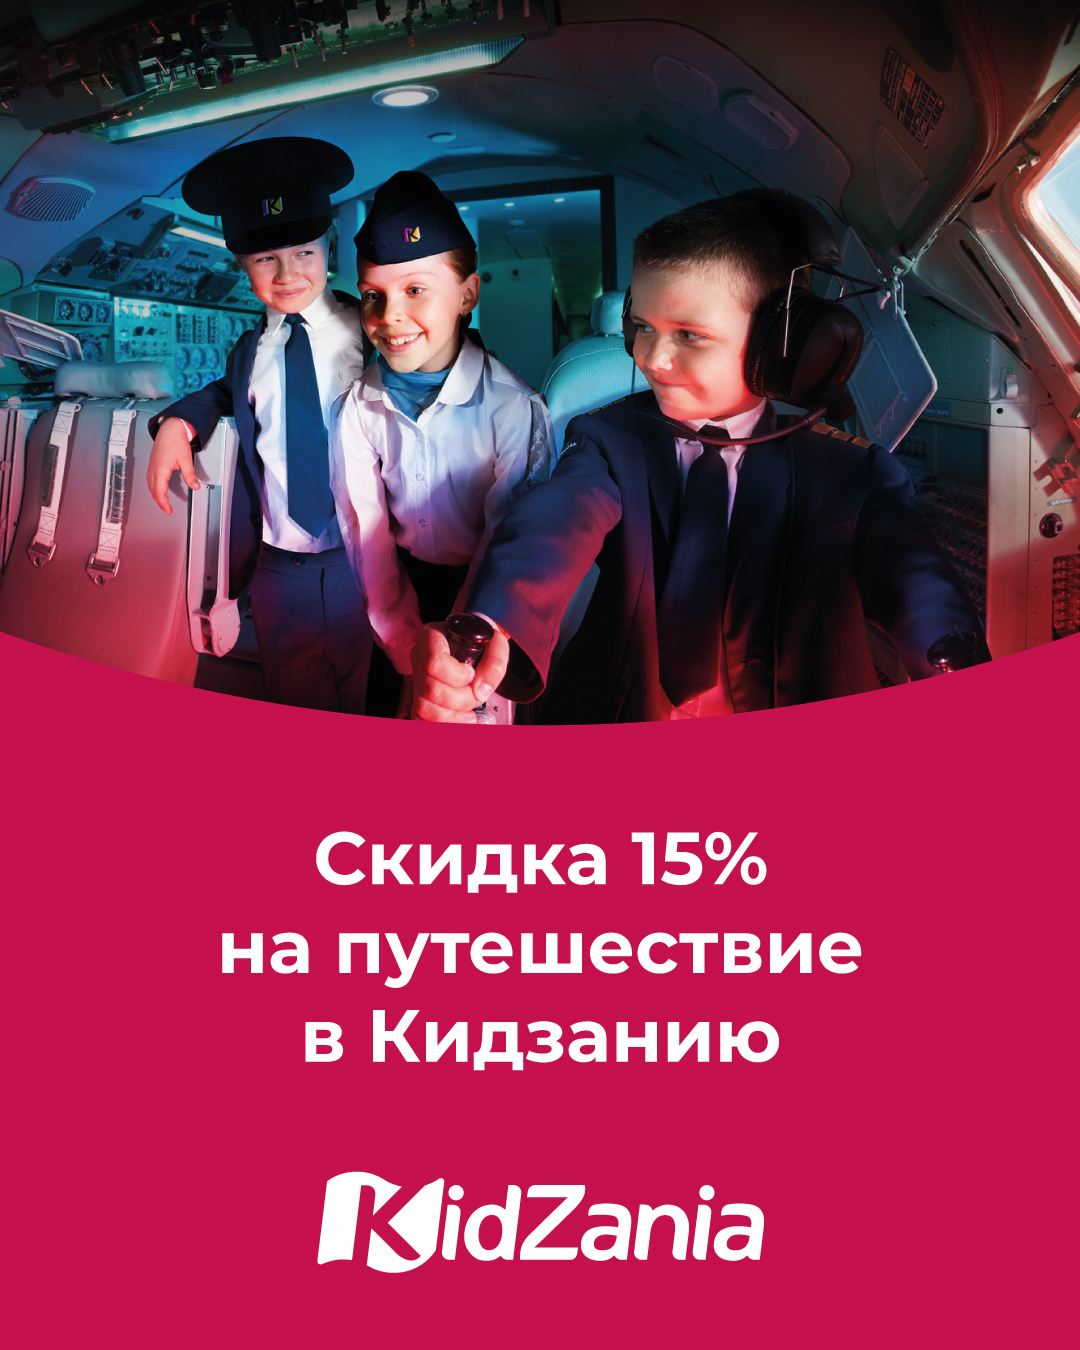 Скидка 15% на путешествия в Кидзанию Москва!